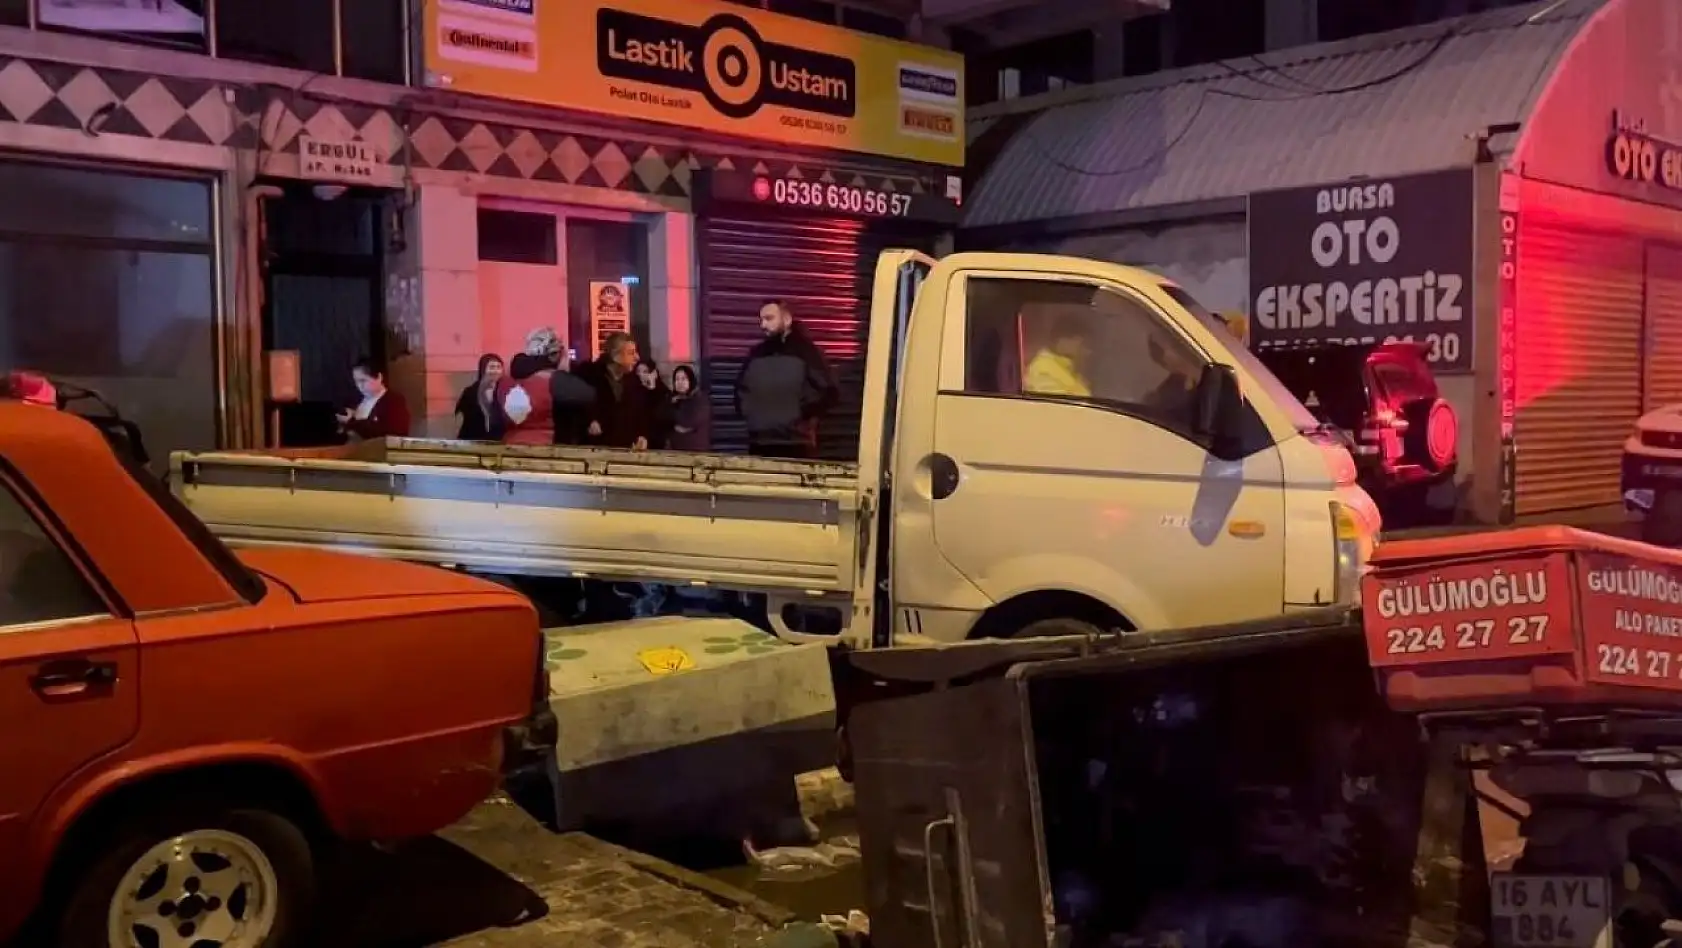 Bursa'da kontrolden çıkan otomobil, park halindeki araçlara çarptı: 1 ağır yaralı